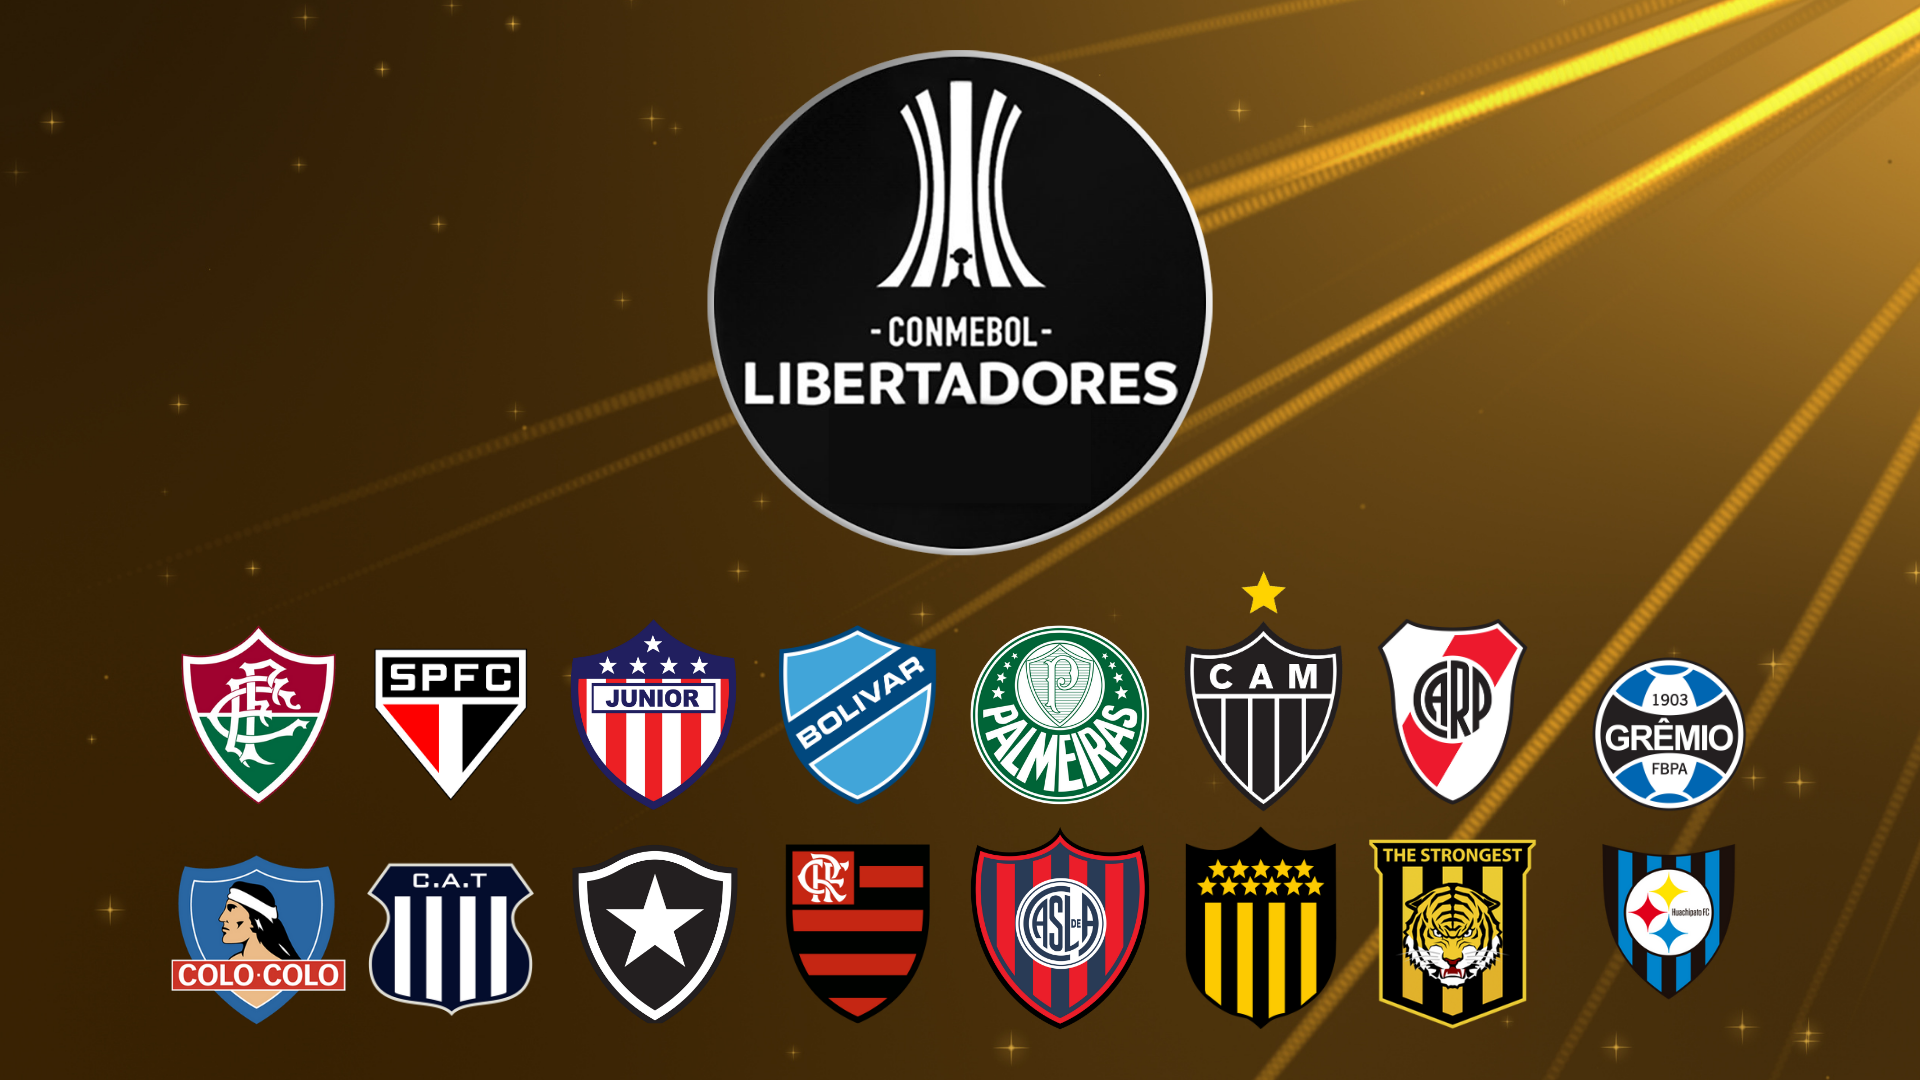 Libertadores 2024